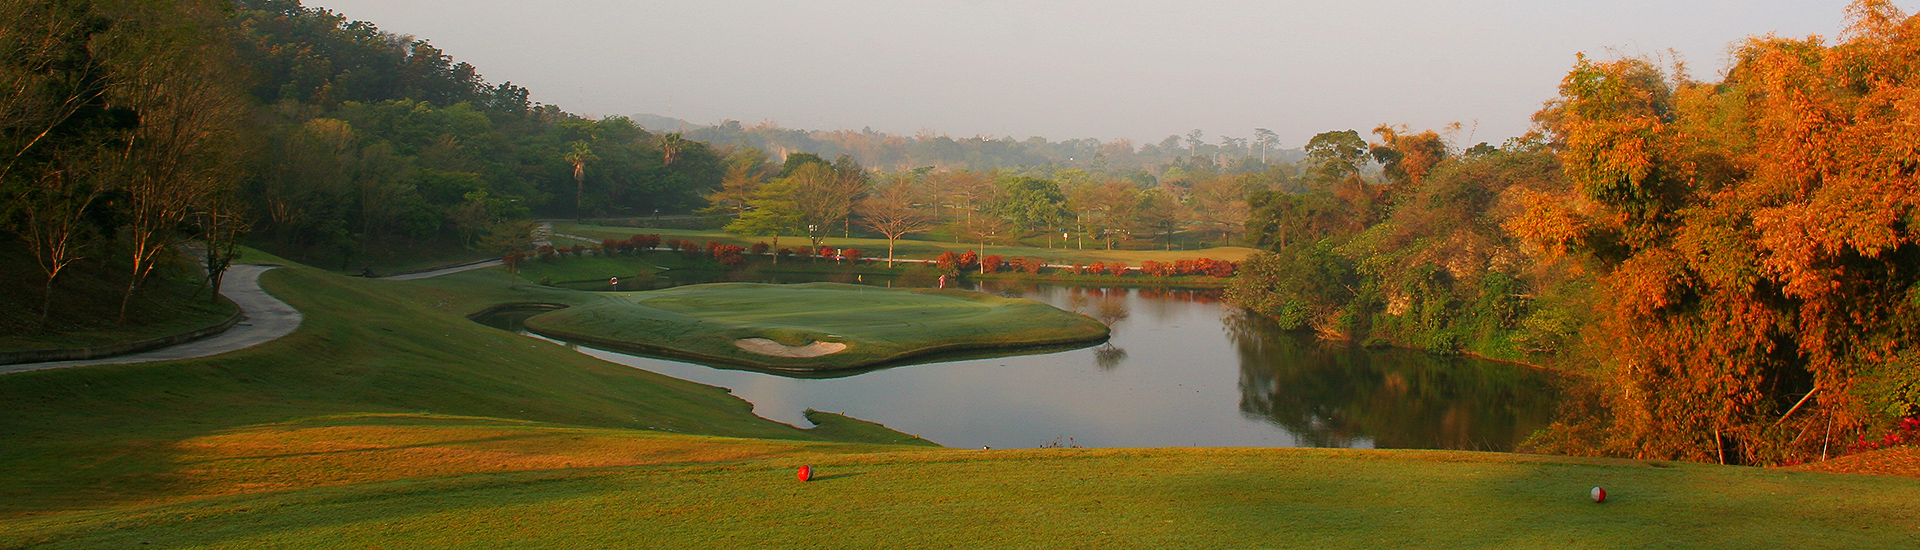 嘉南平原エリア 台湾でゴルフを楽しもう